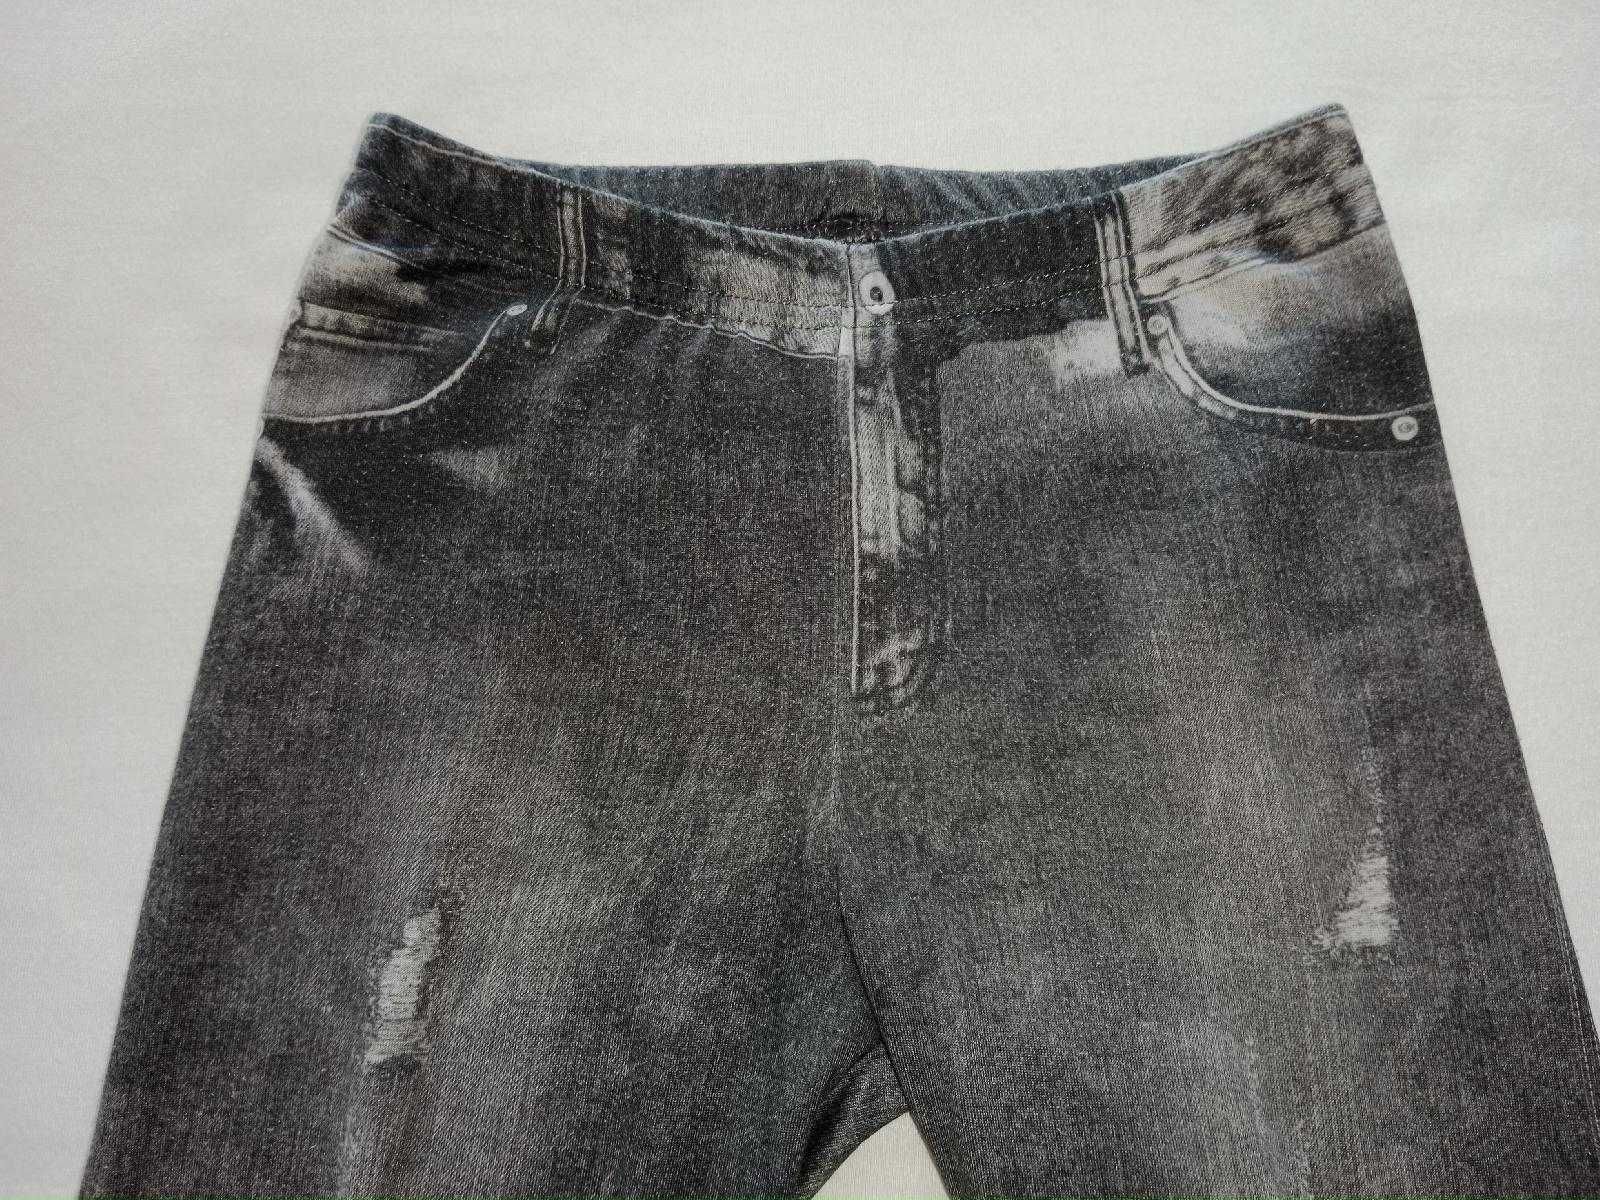 Używane duże spodnie legginsy wzór jak jeans rozmiar 110/116 tanio